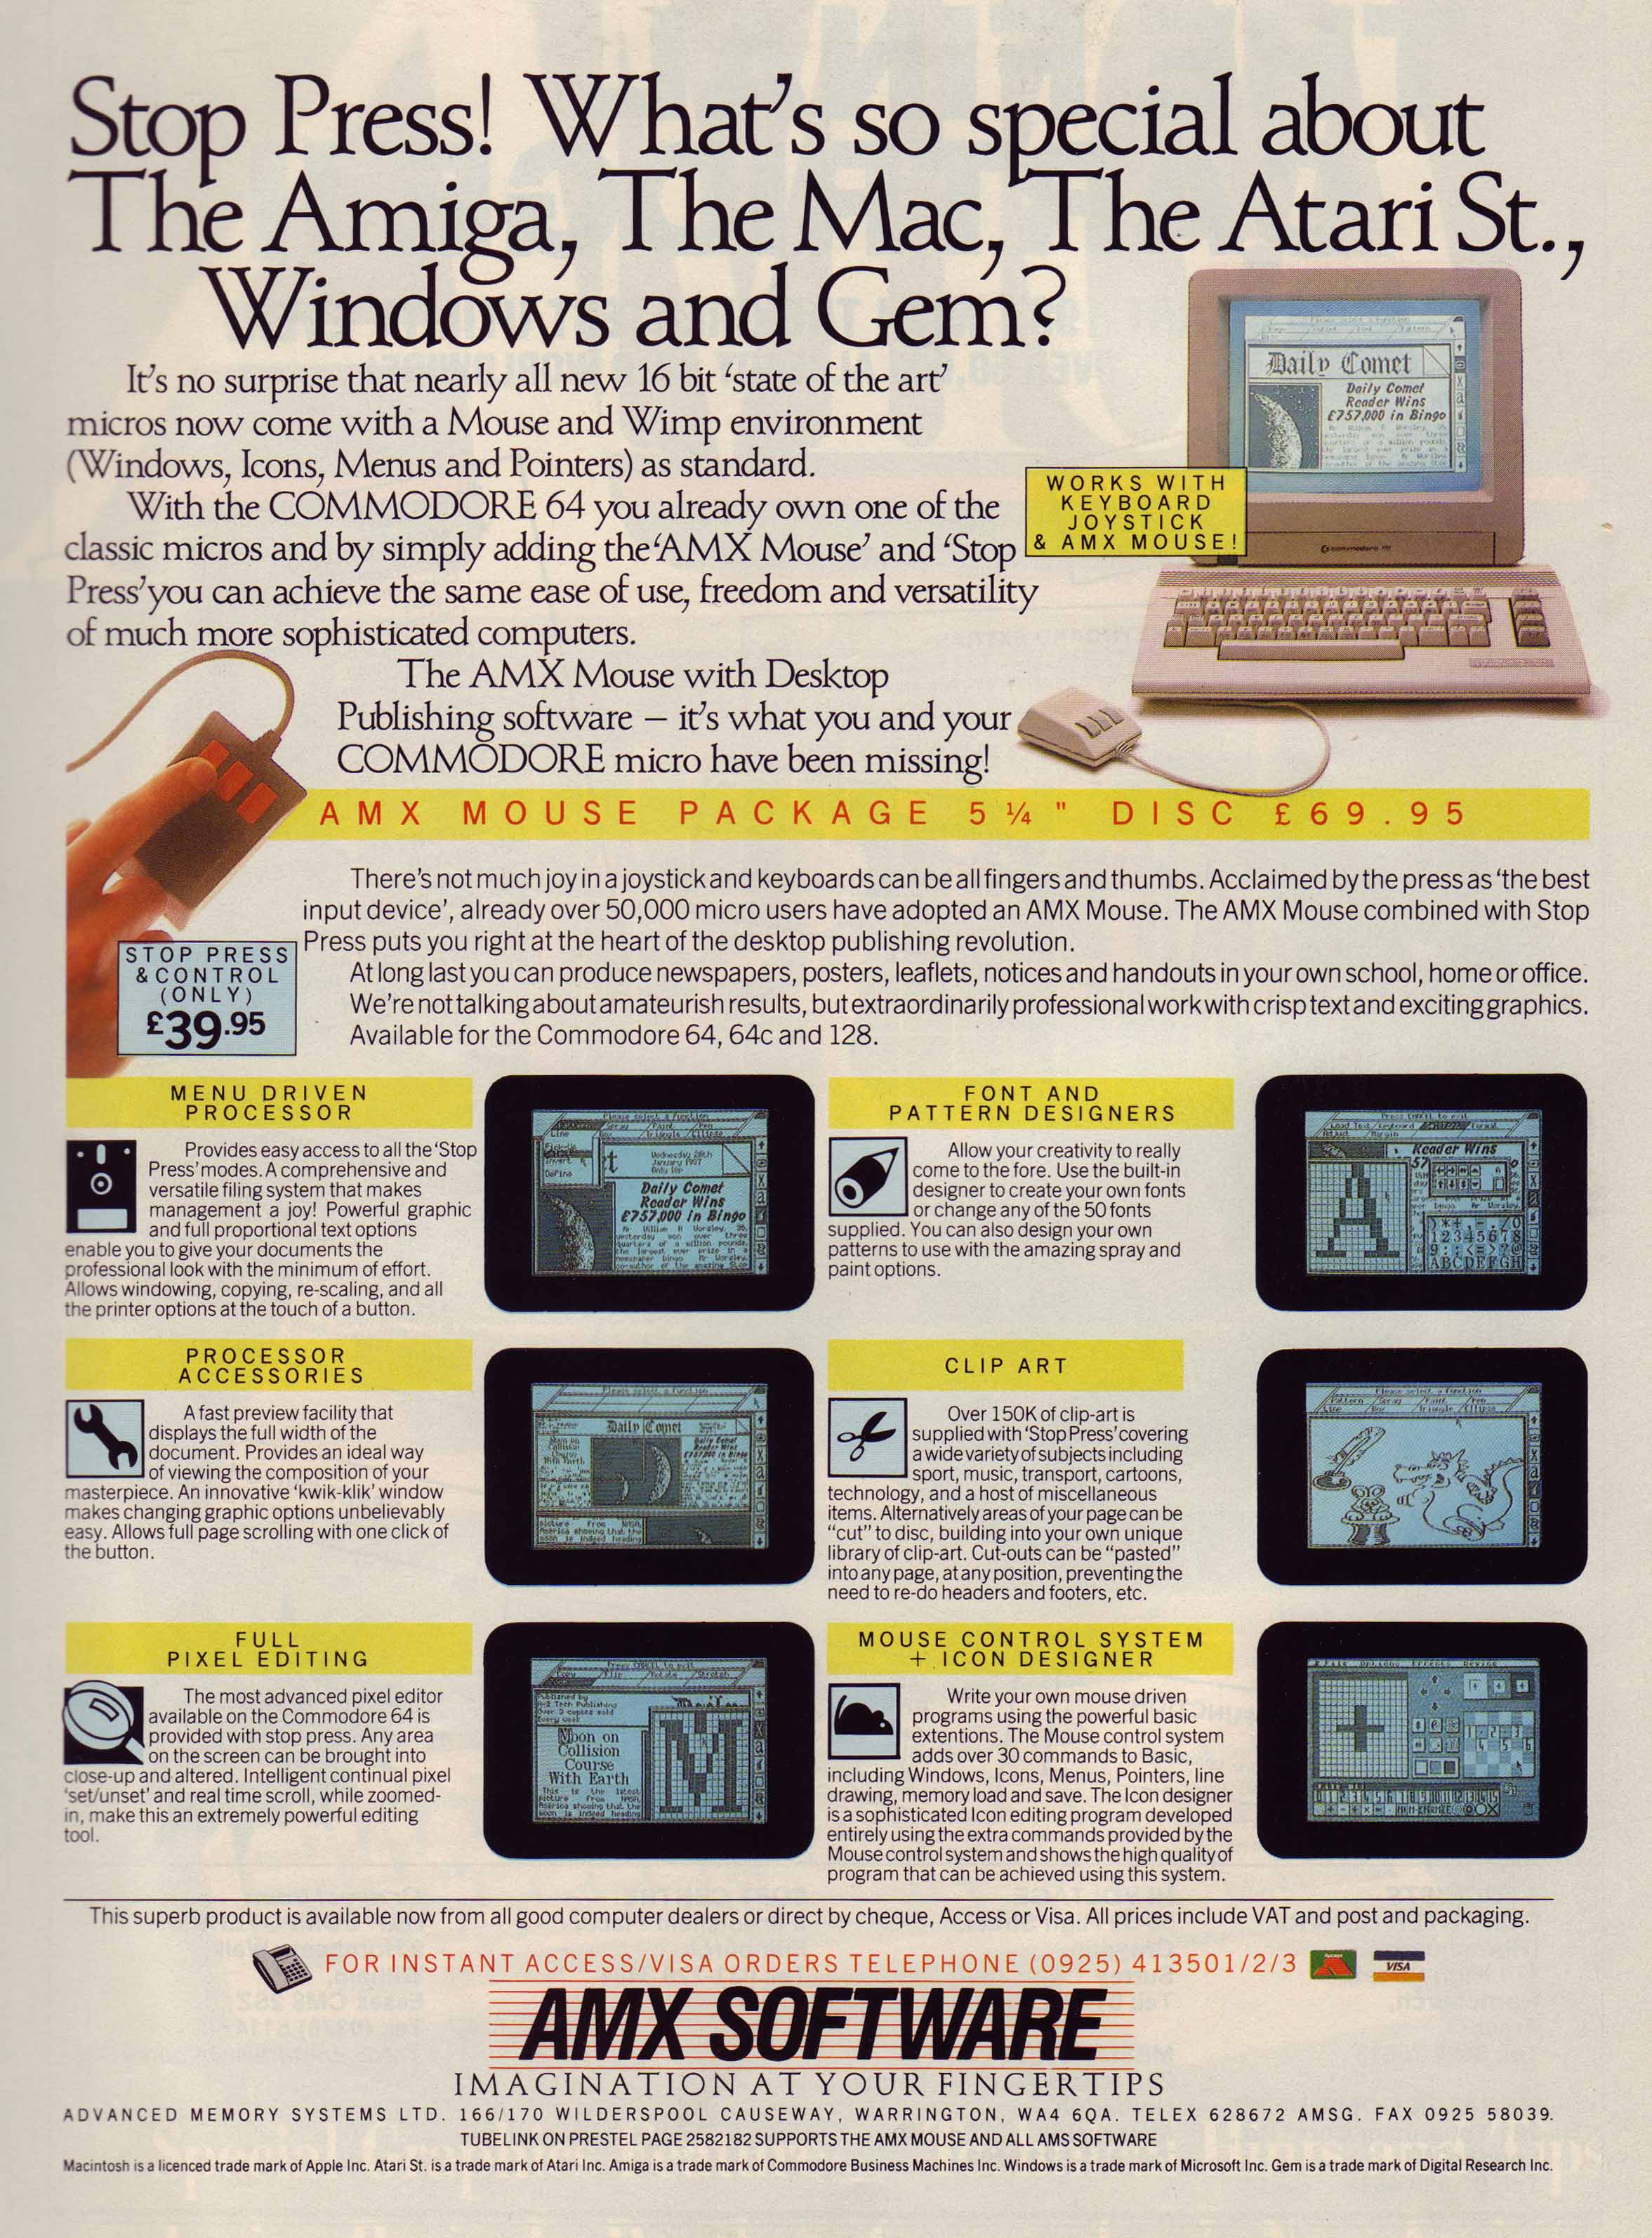 Stop Press ad in Your Commodore Magazine